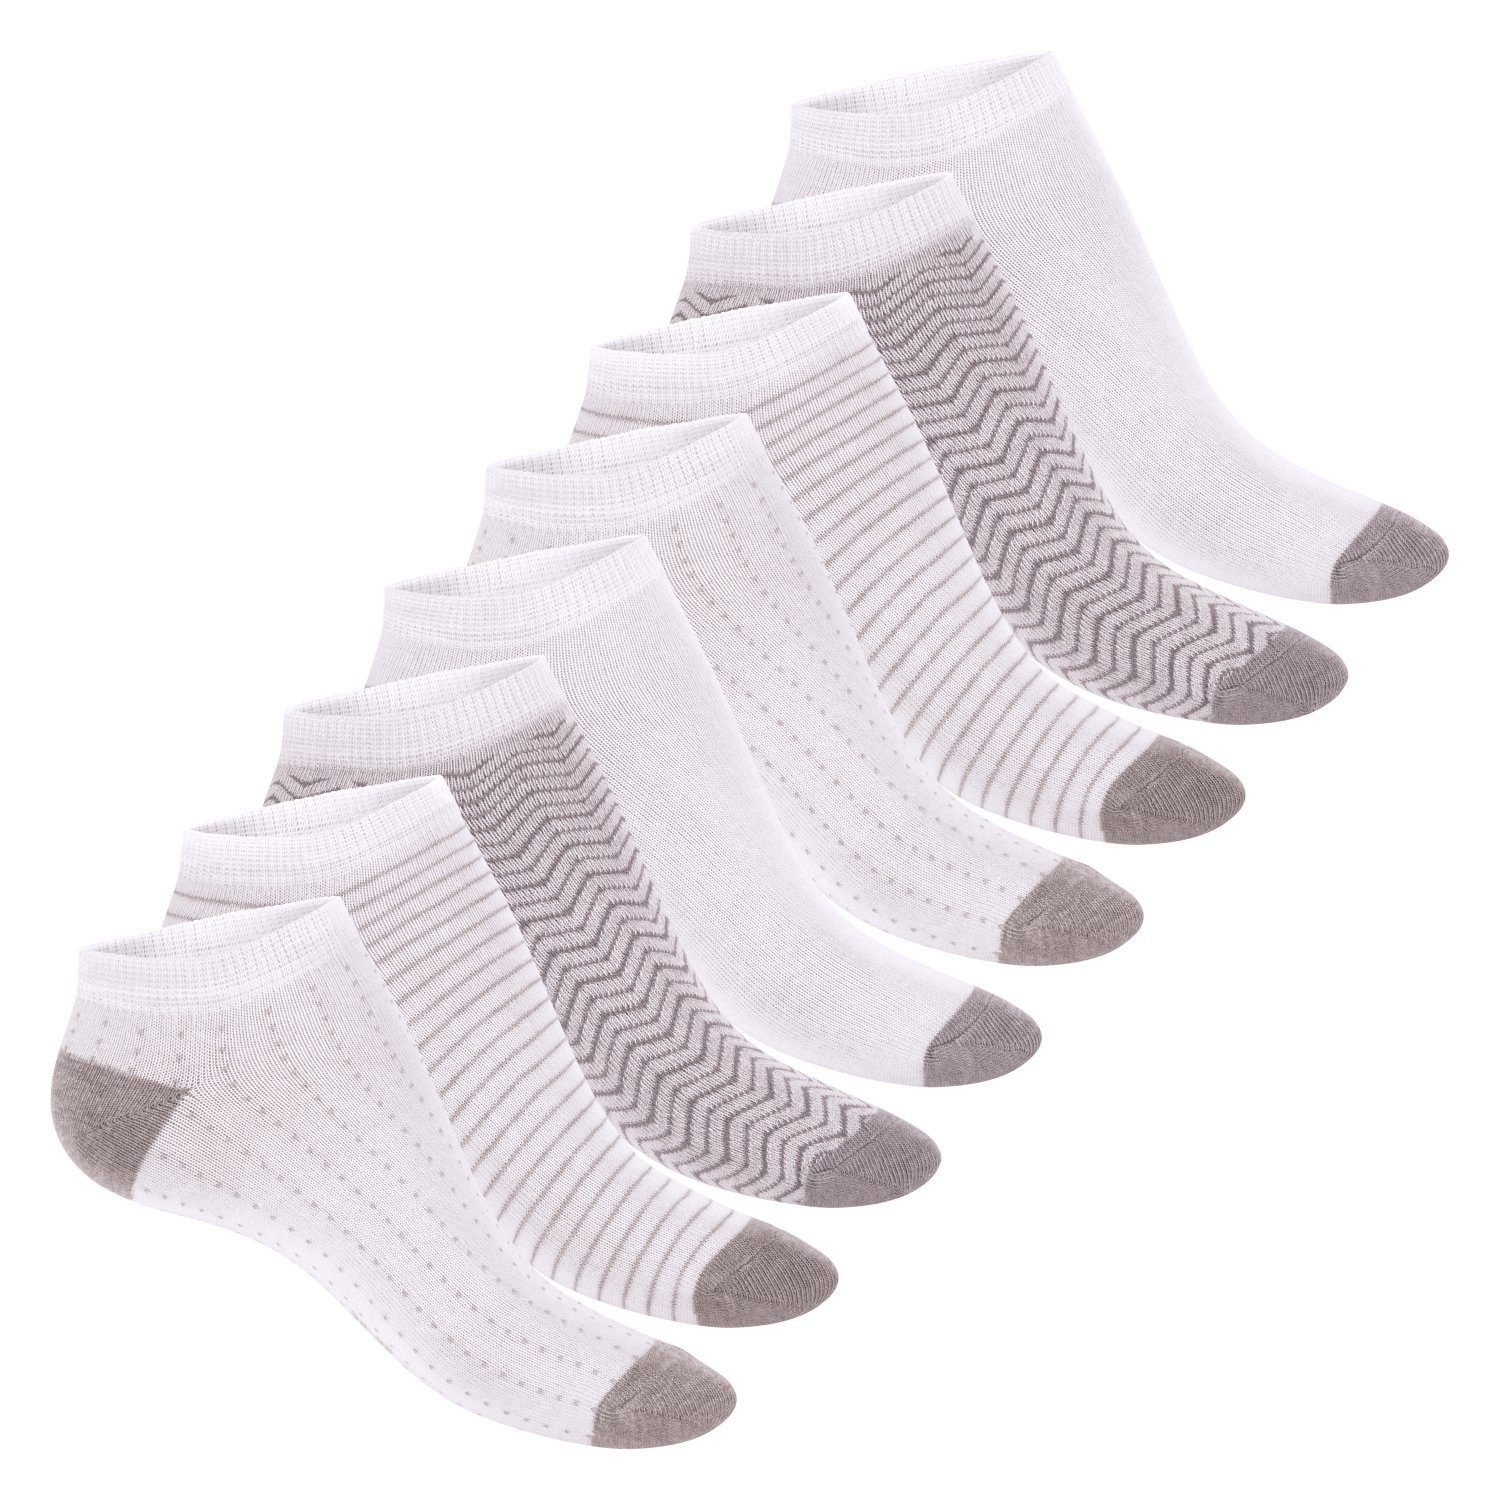 Footstar Sneakersocken süße Damen Sneaker Melange Kurze (8 Söckchen Paar) Socken mit Muster Grey